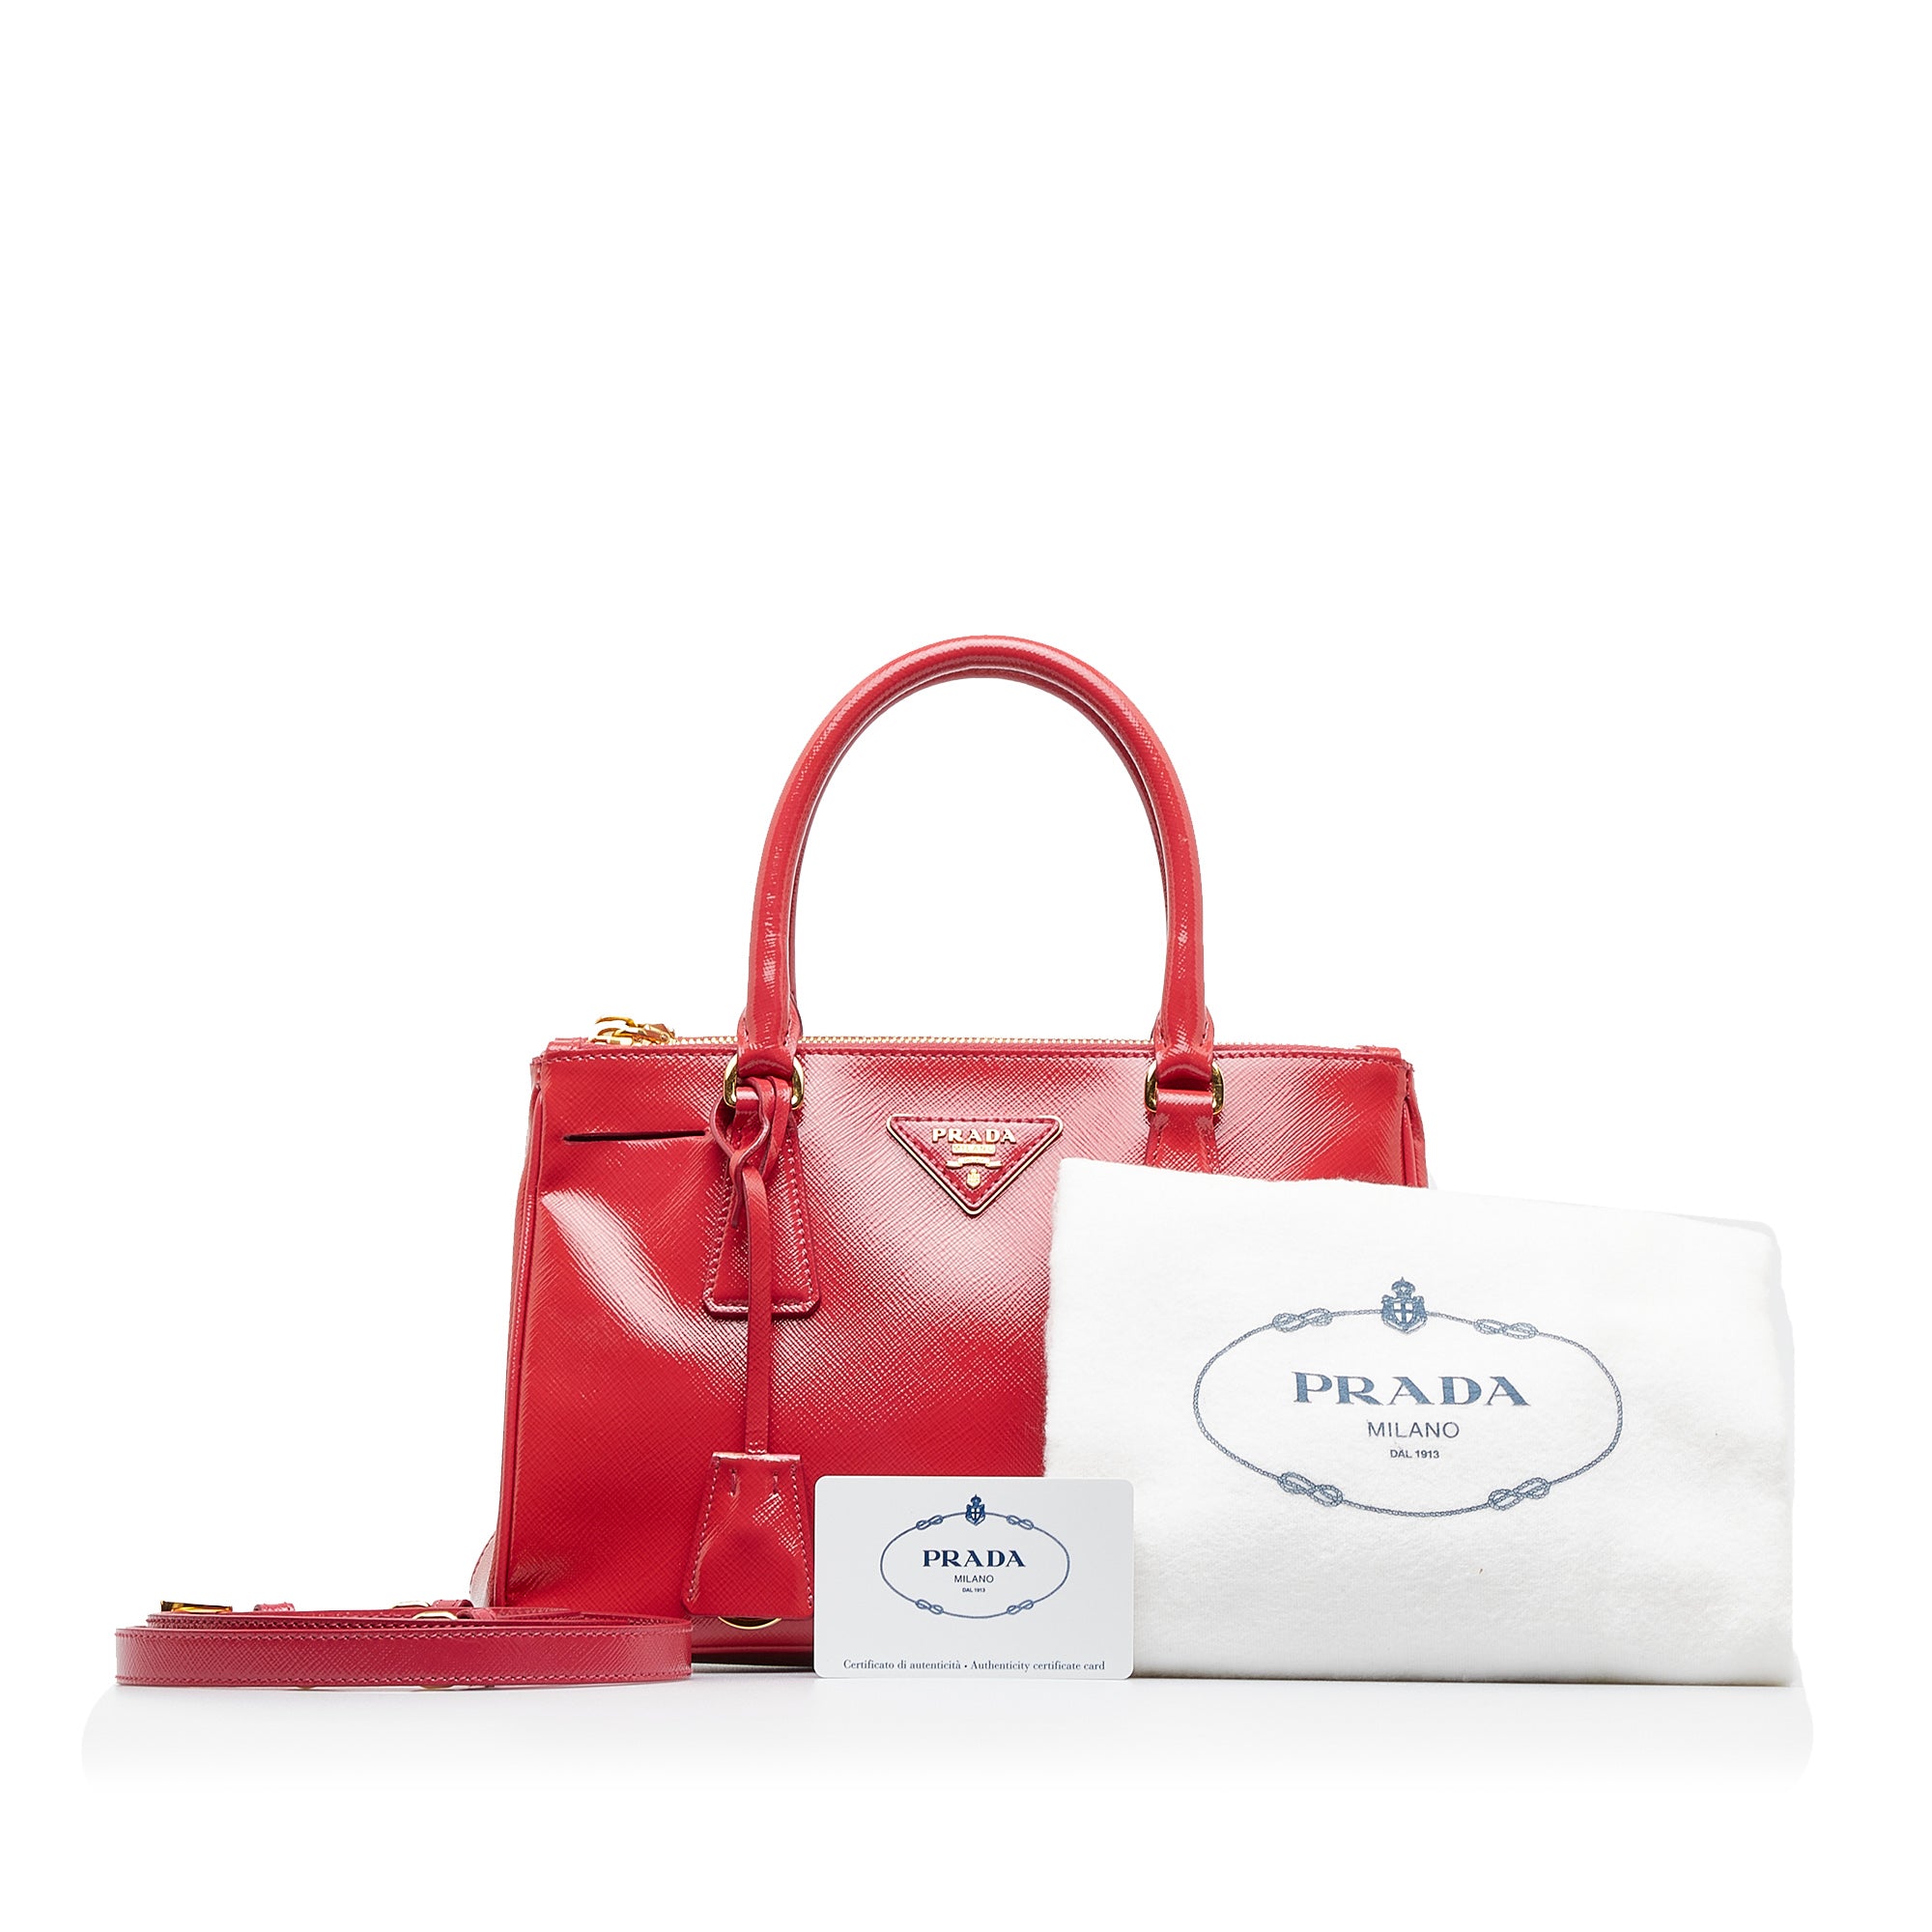 Red Prada Galleria Saffiano Large Leather Bag 100% Authentic